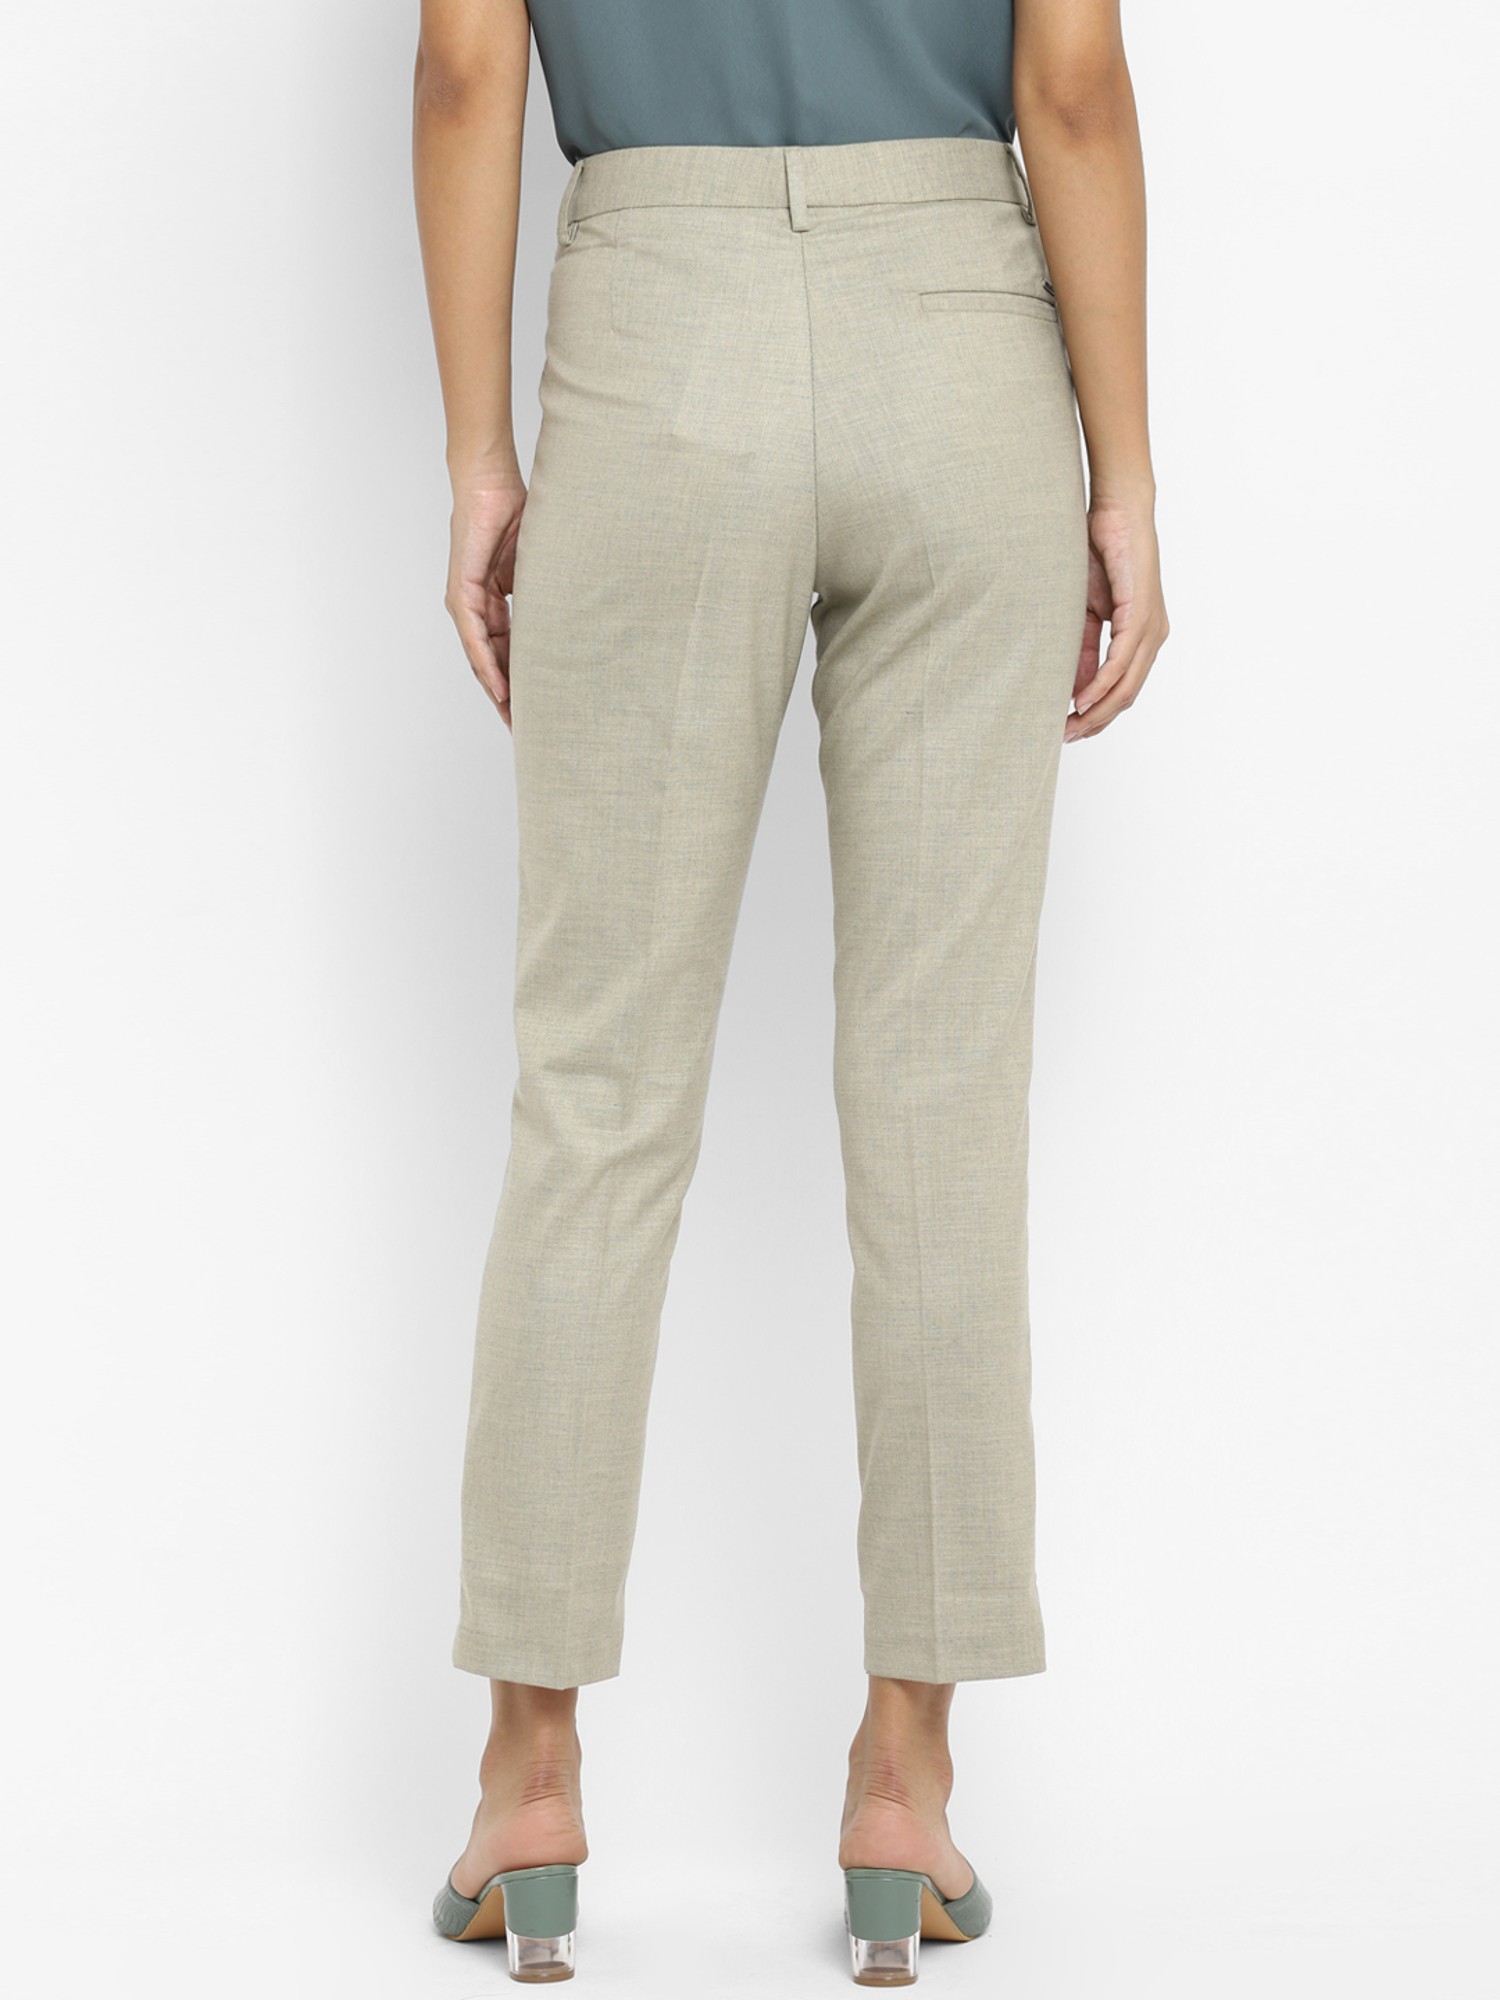 Buy Beige Trousers  Pants for Men by Linen Club Online  Ajiocom